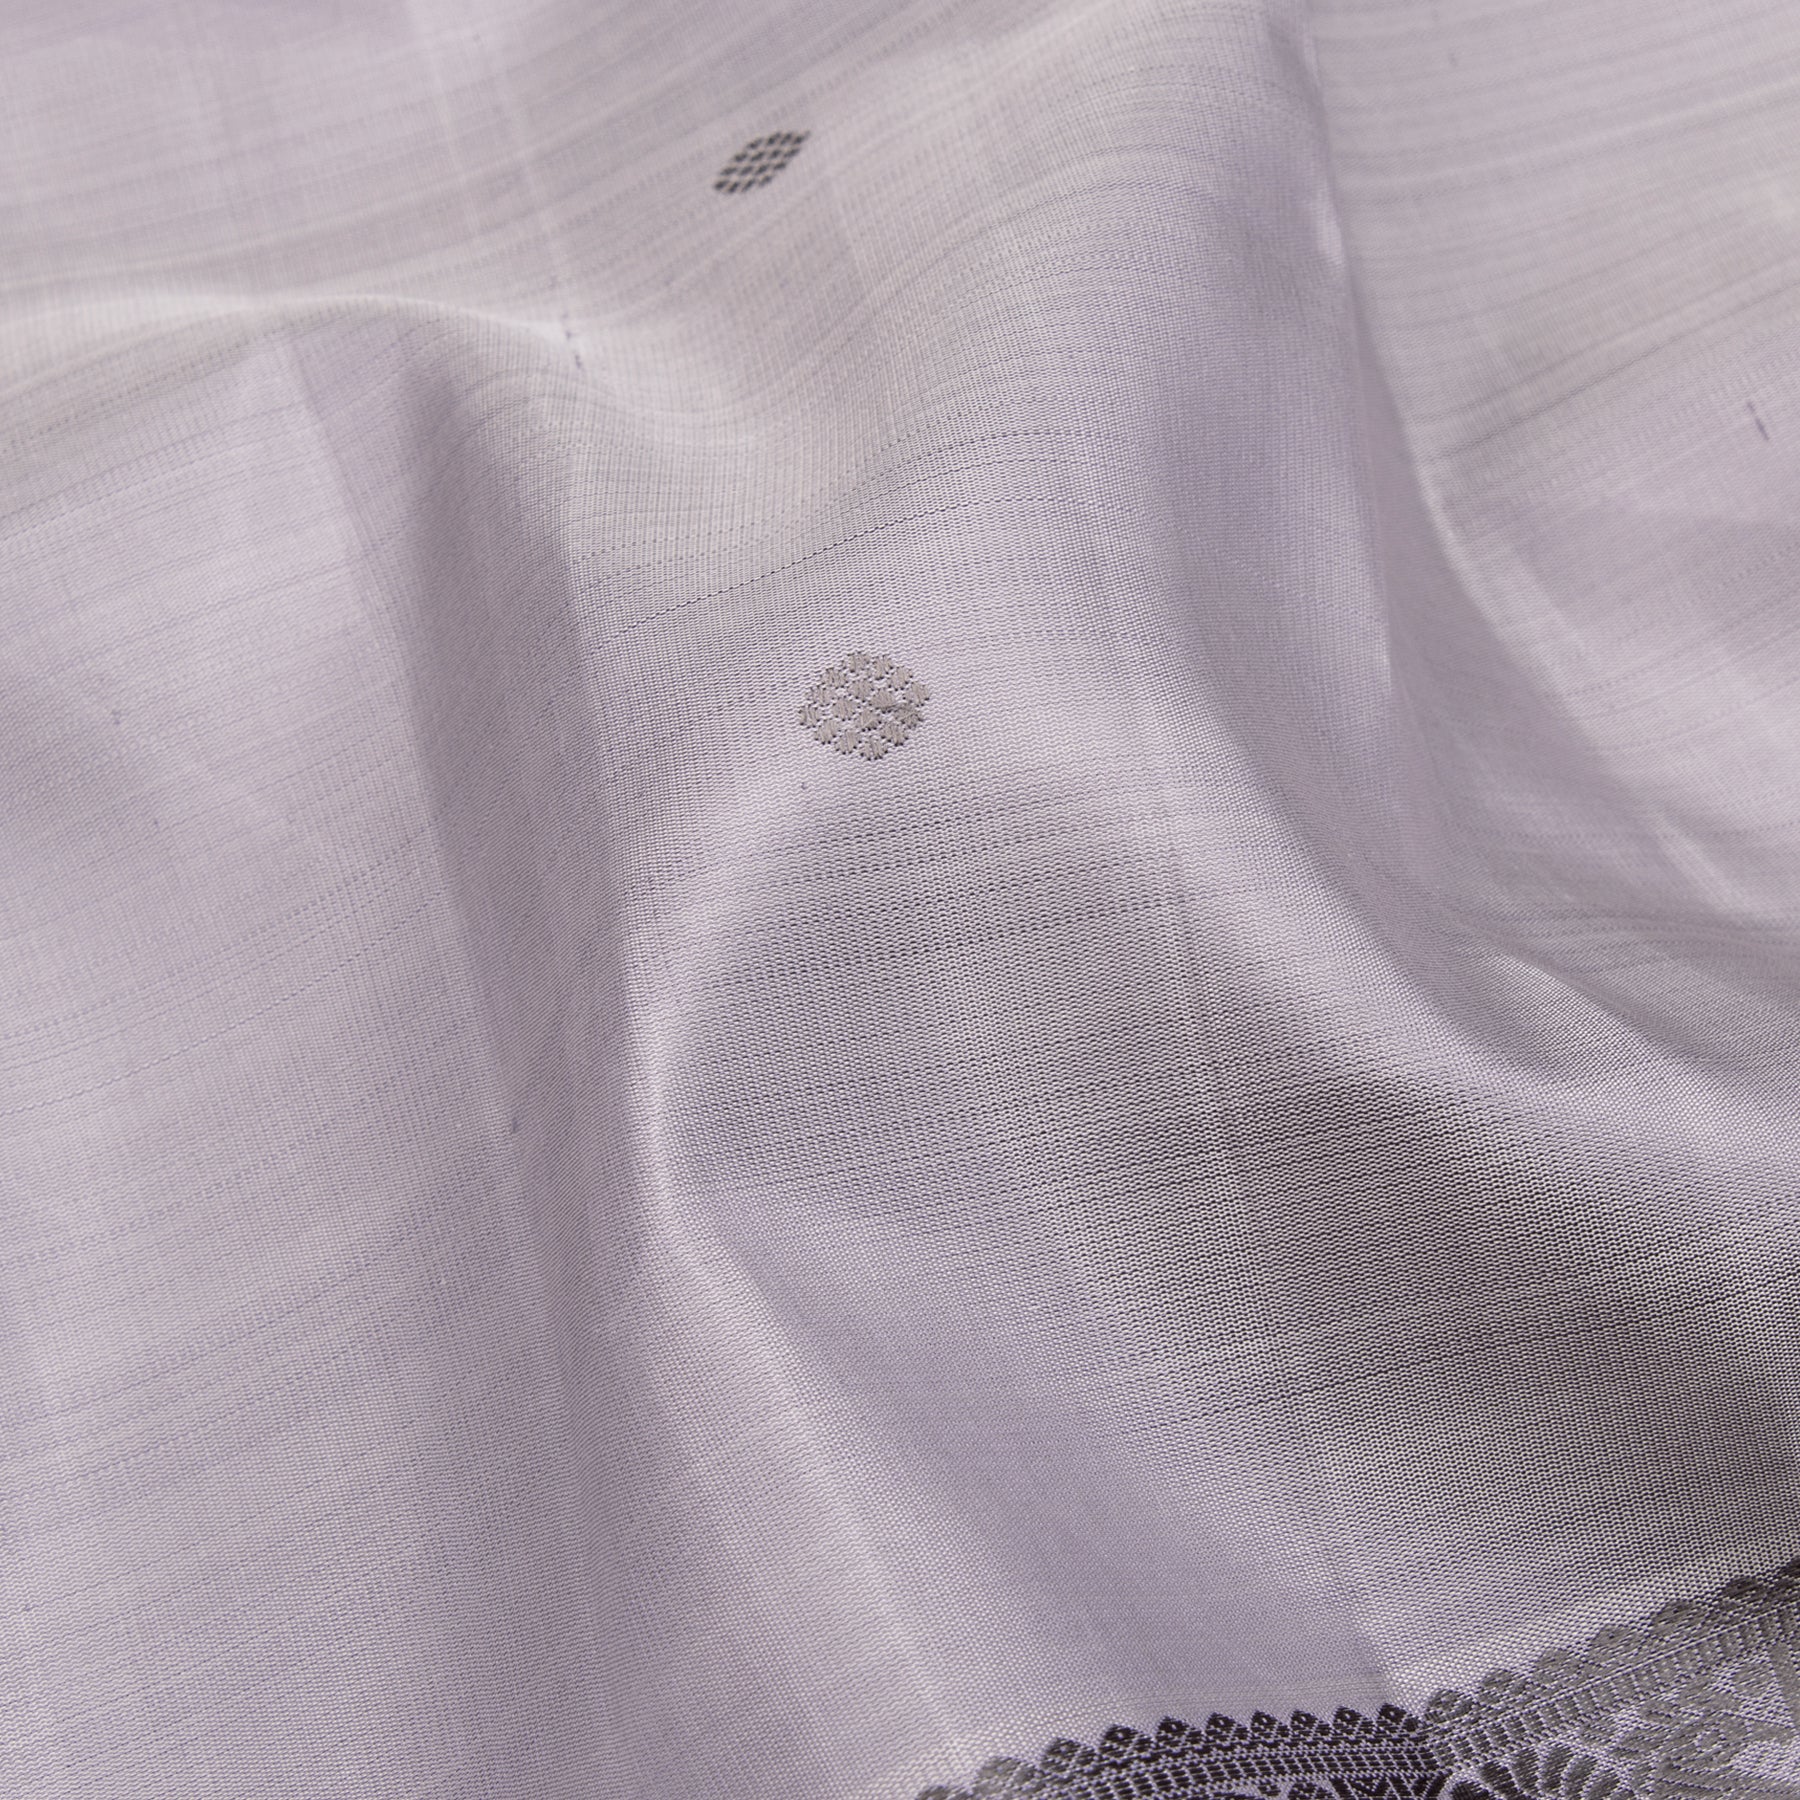 Kanakavalli Kanjivaram Silk Sari 23-595-HS001-00363 - Fabric View